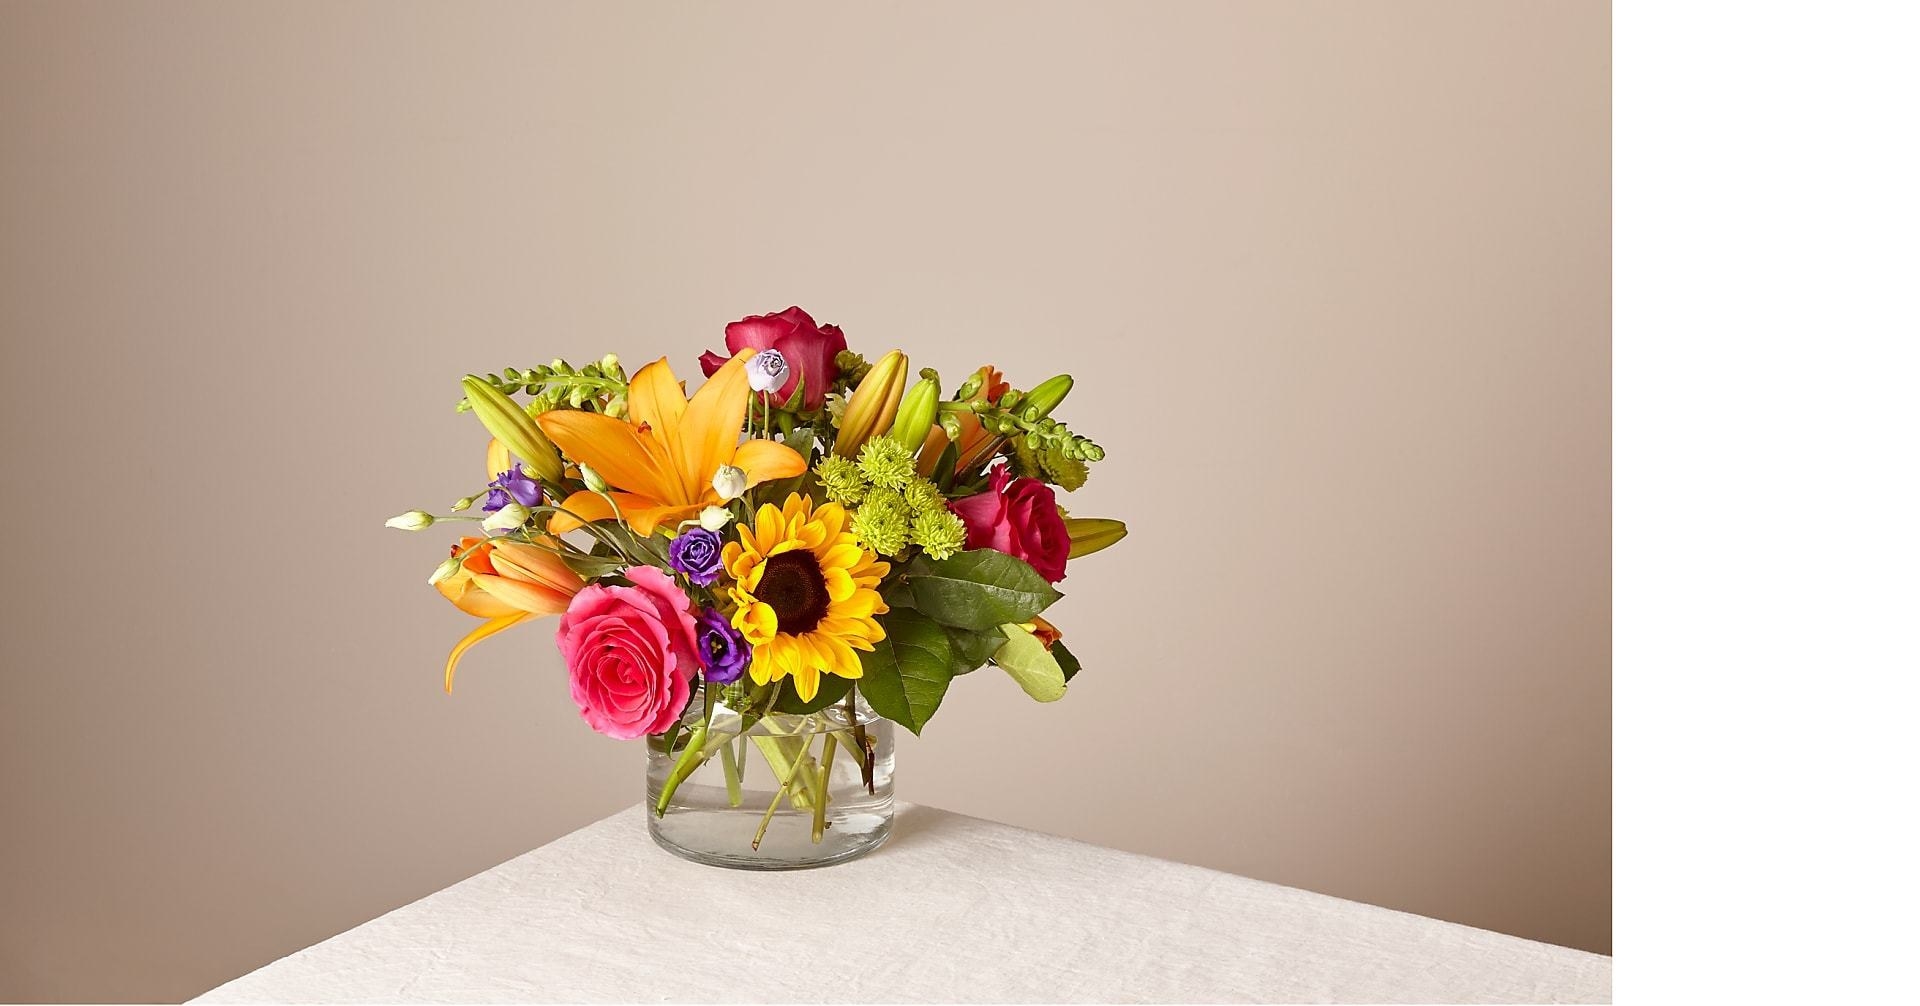  5 Най-добрите услуги за доставка на цветя в същия ден